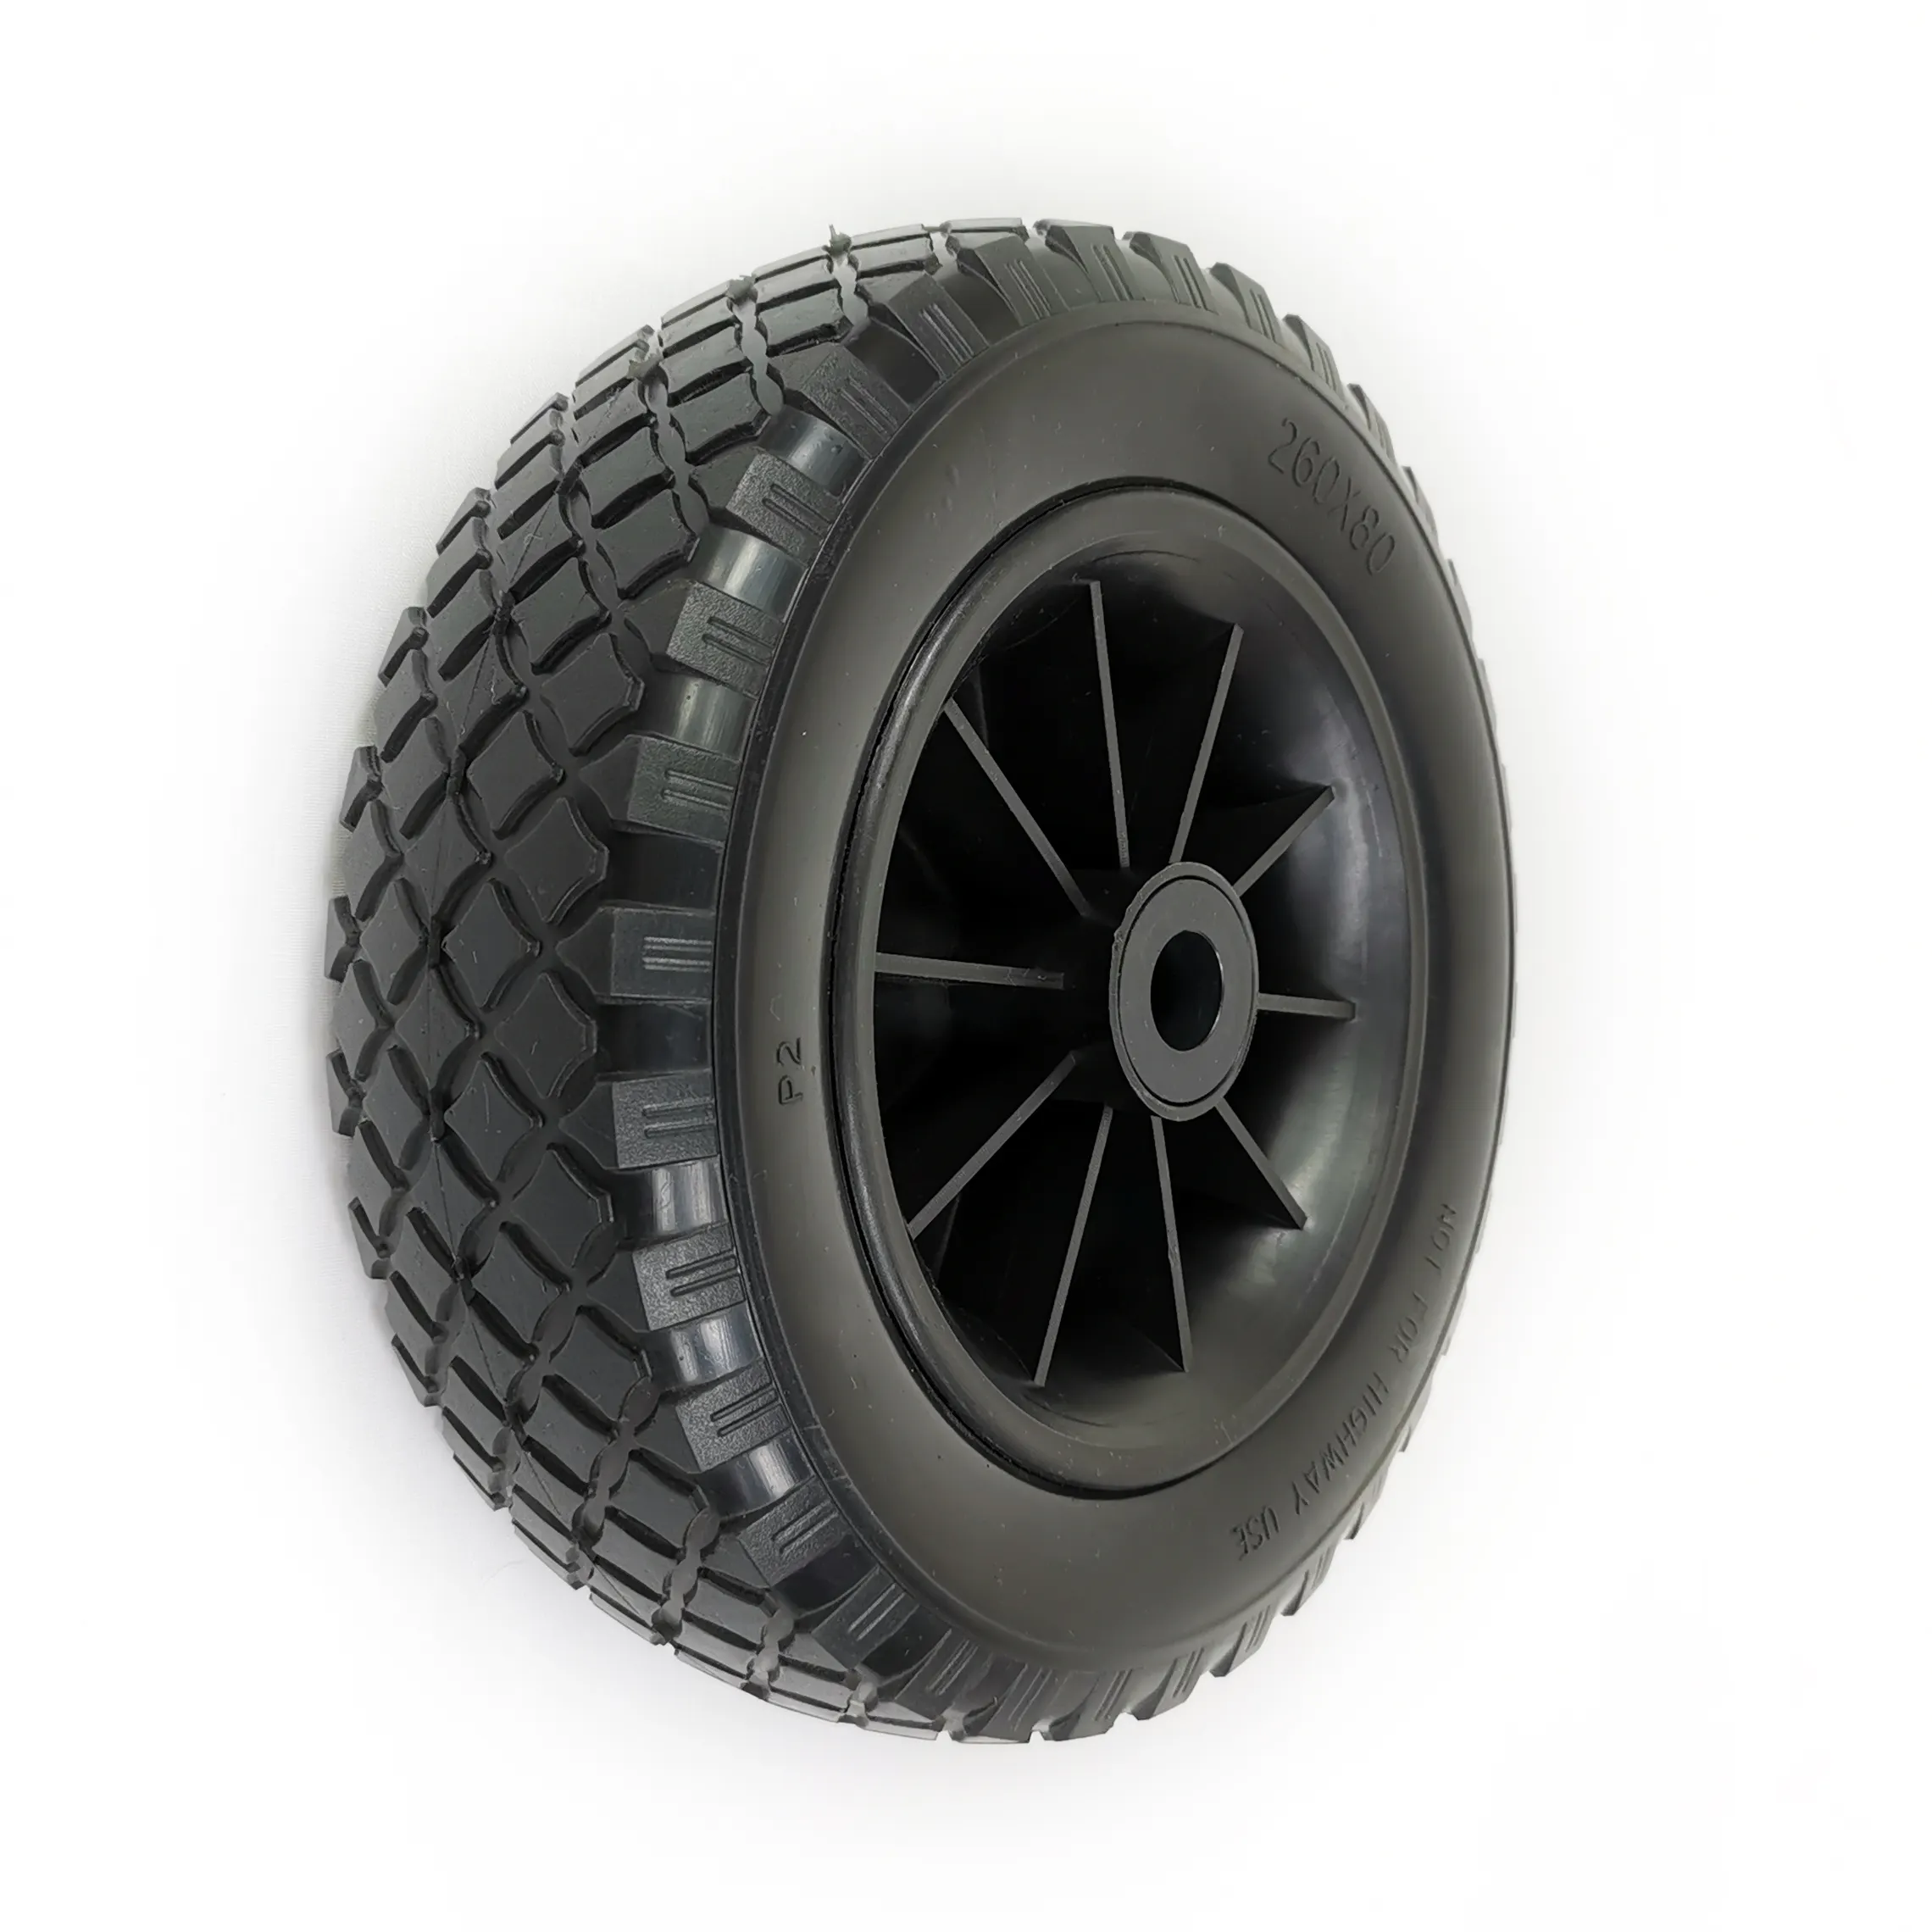 Neumático de espuma de poliuretano, carrito de jardín de 260x80mm, rueda de goma